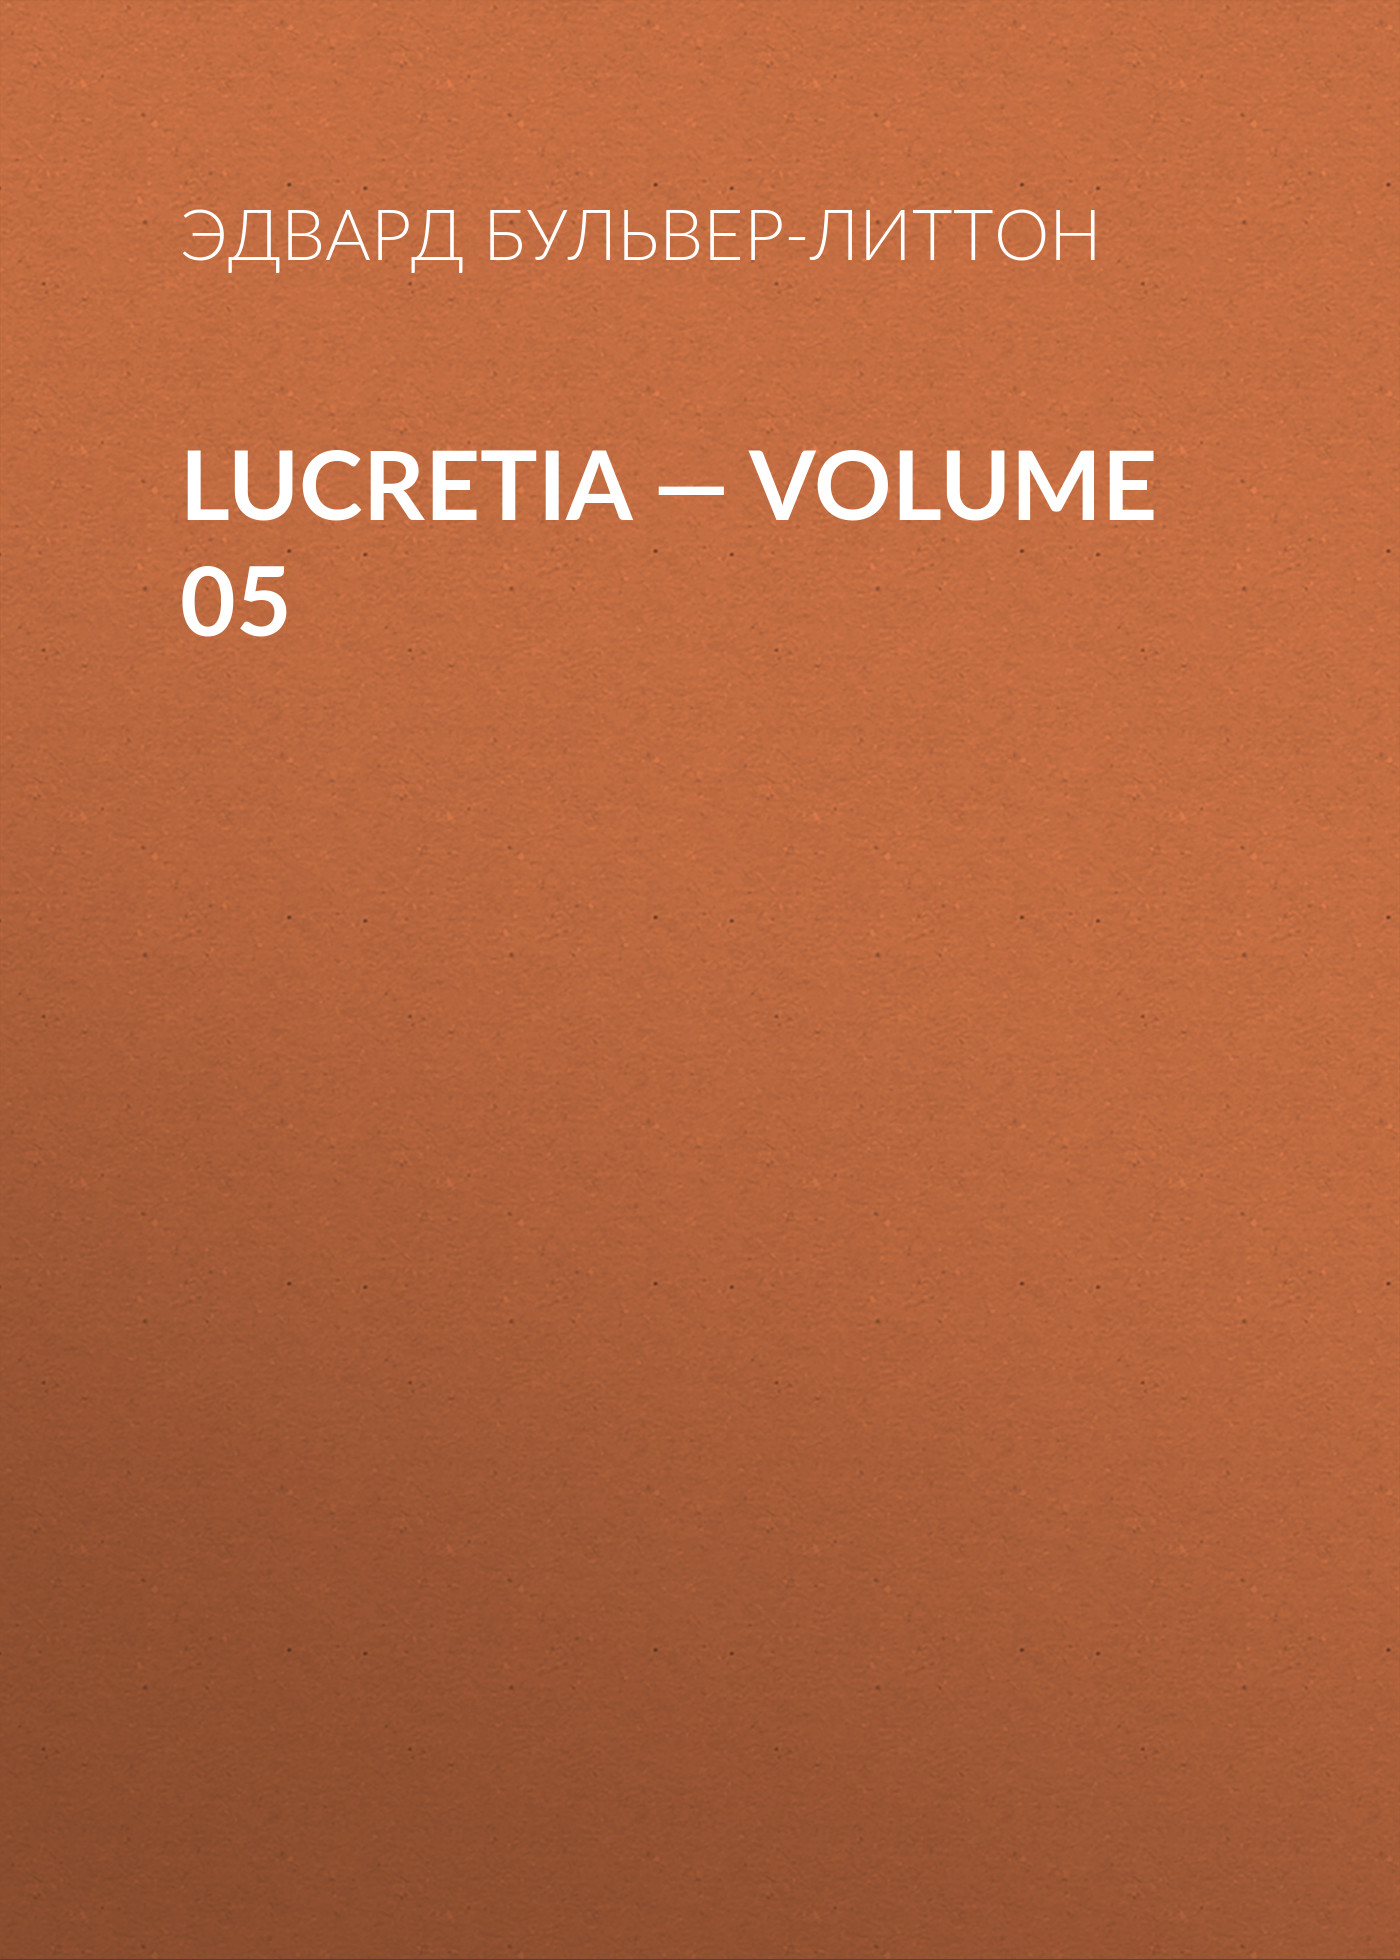 Книга Lucretia – Volume 05 из серии , созданная Эдвард Бульвер-Литтон, может относится к жанру Литература 19 века, Зарубежные детективы. Стоимость электронной книги Lucretia – Volume 05 с идентификатором 35009057 составляет 0 руб.